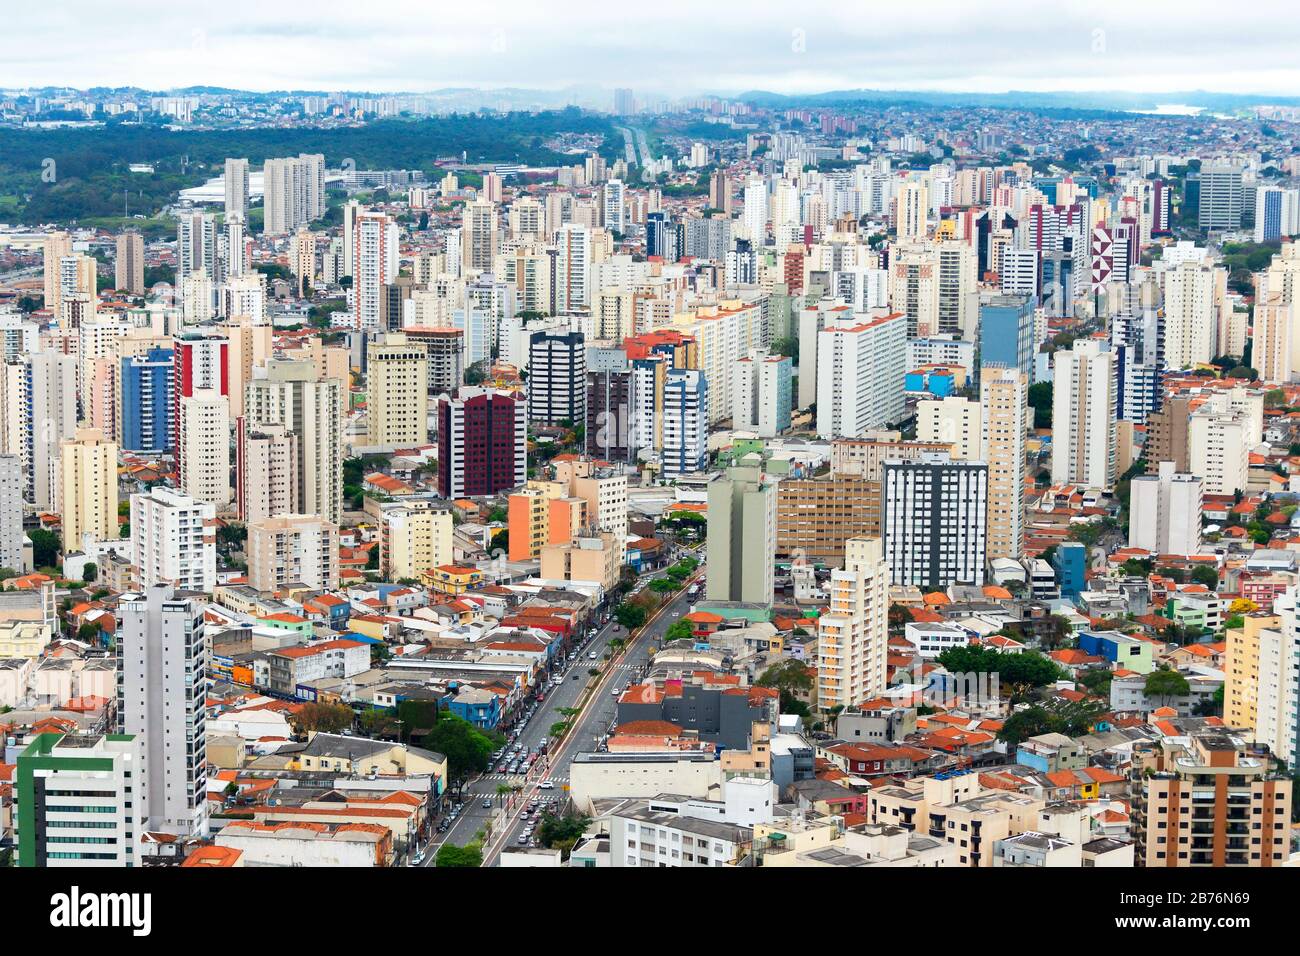 Luftaufnahme von Sao Paulo, Brasilien mit mehreren Wohntürmen. Stadt aufgrund der hohen Populationsdichte auch als Betondschungel bezeichnet. Stockfoto